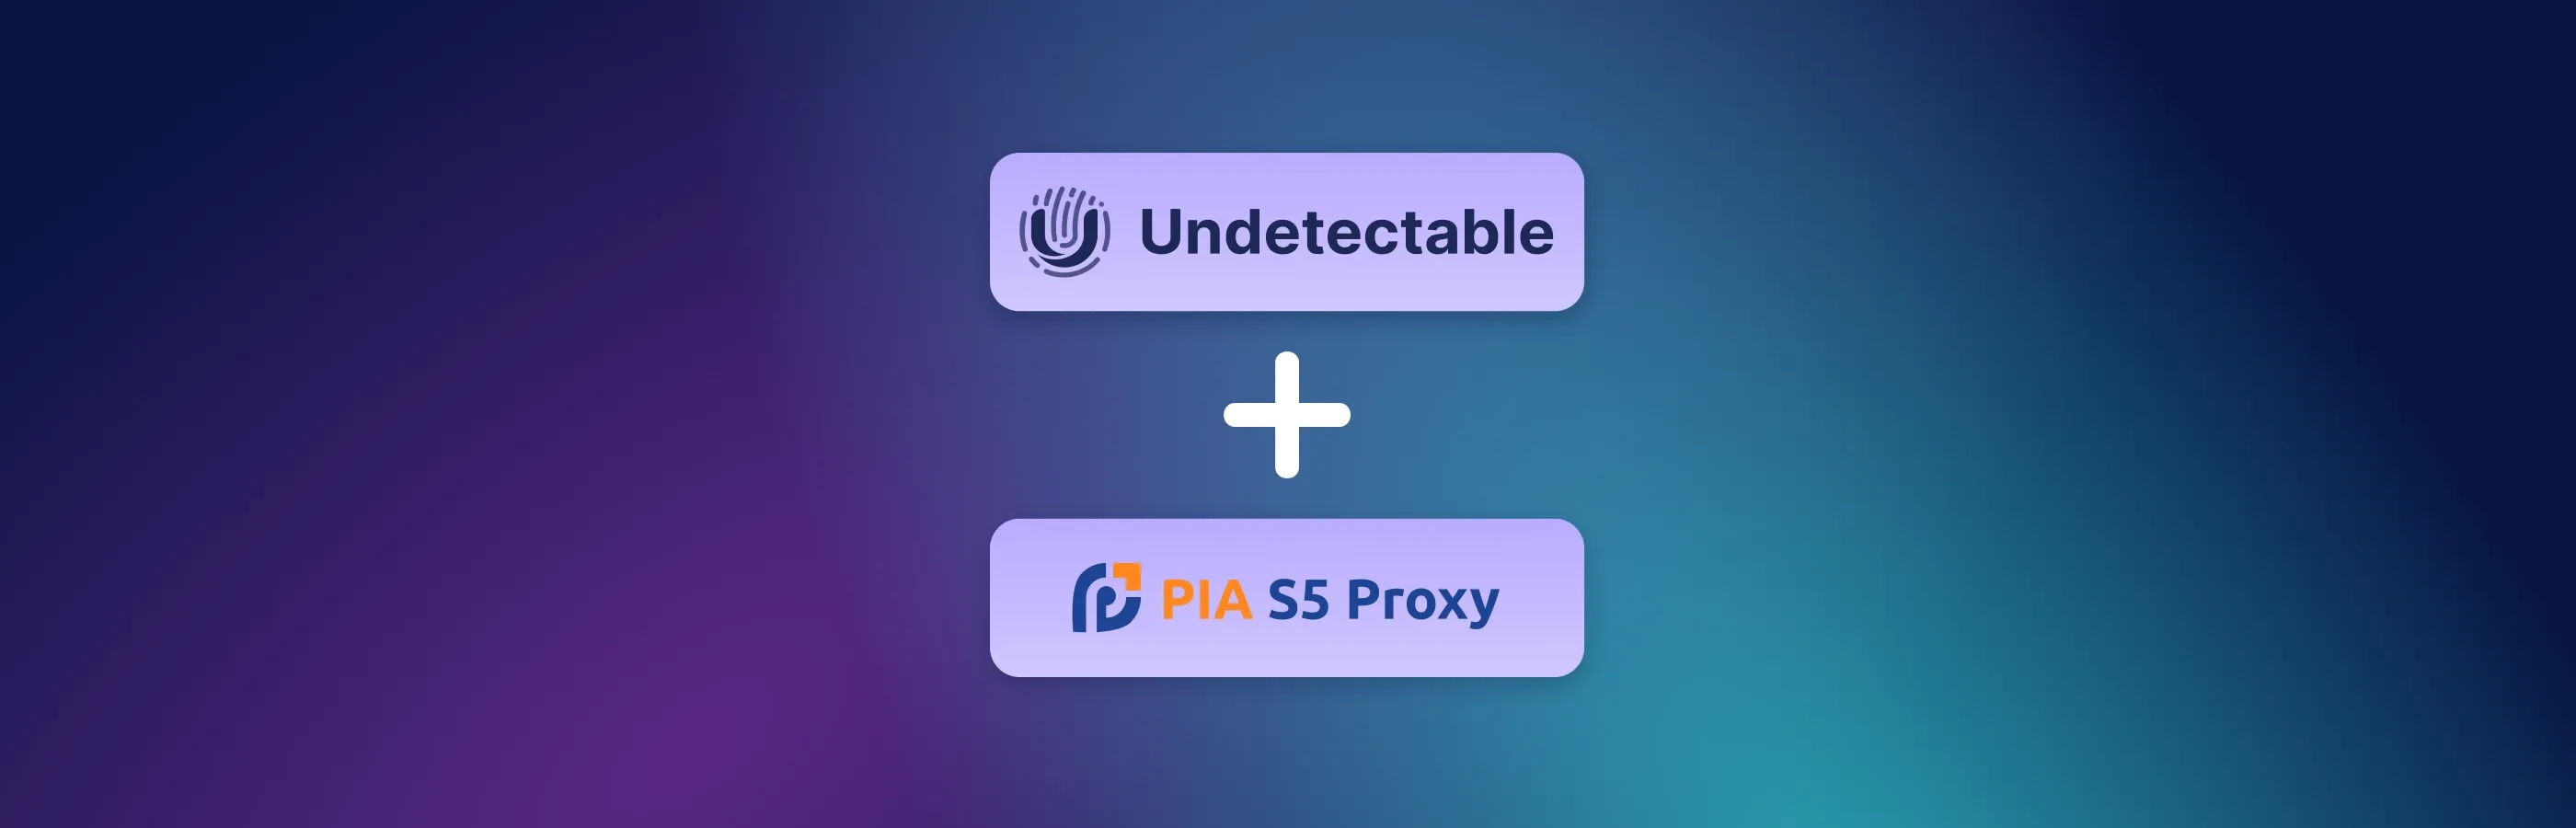 将PIA S5代理连接到反检测浏览器Undetectable：步骤和说明